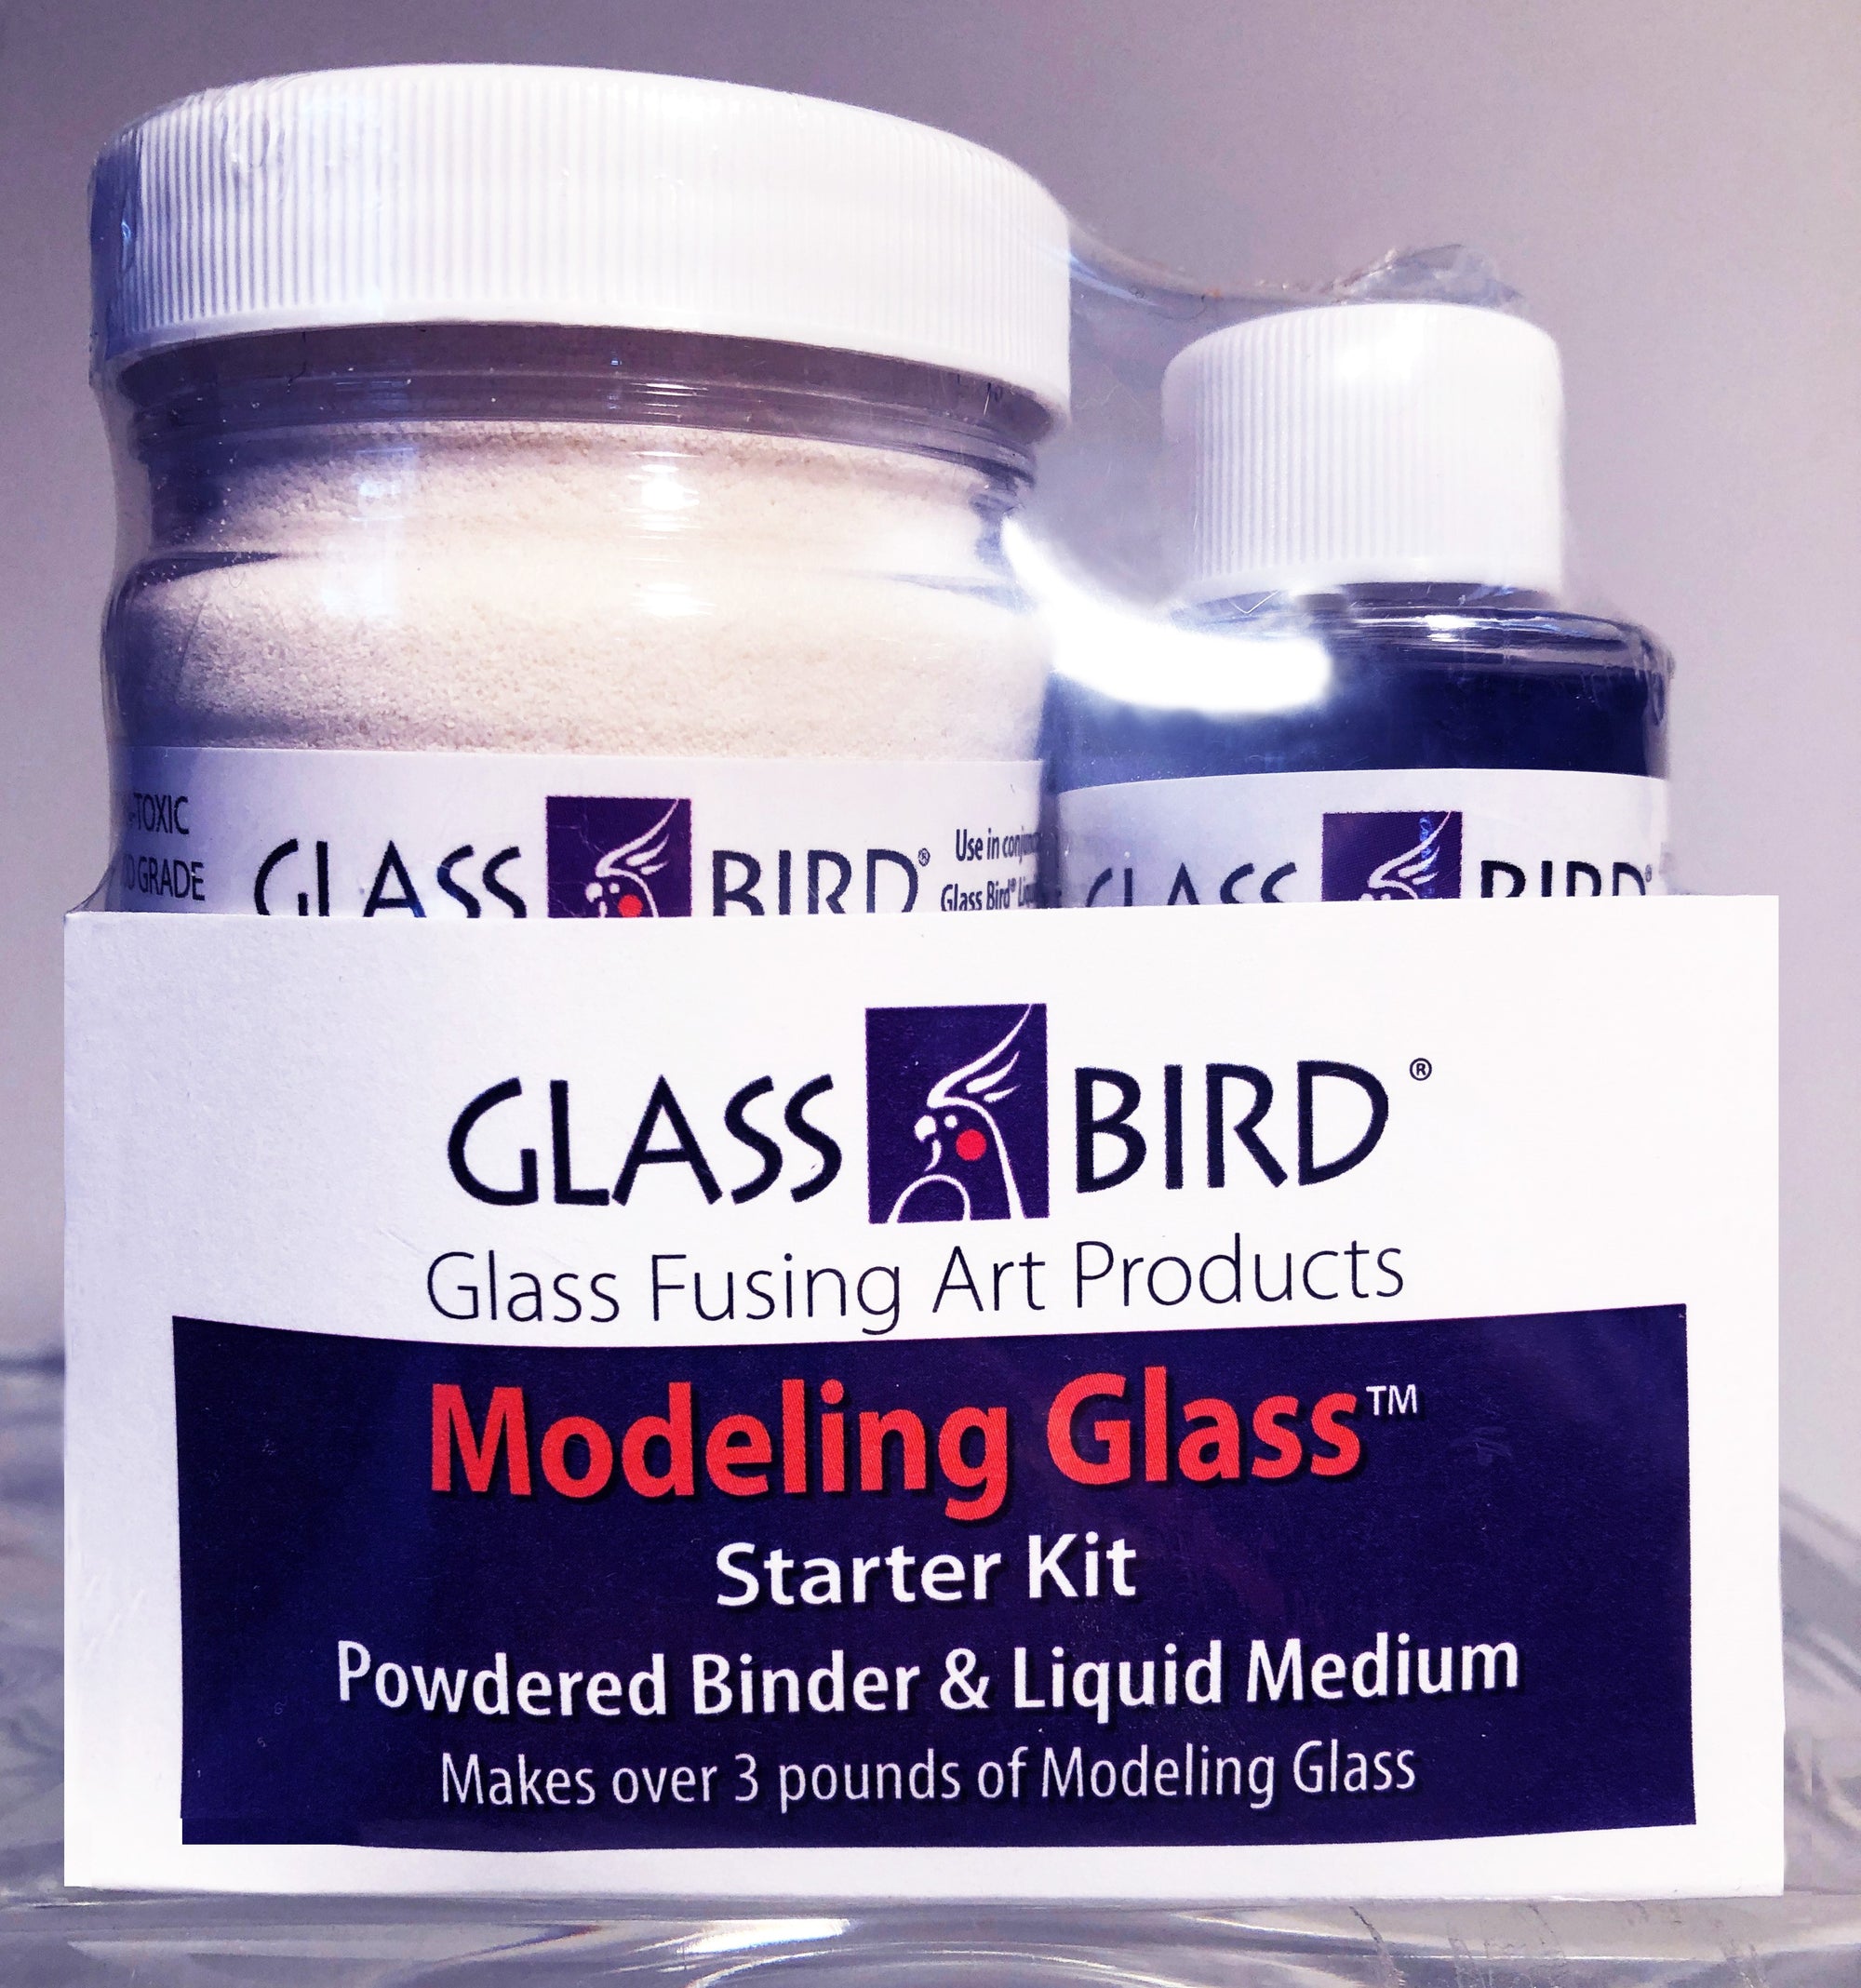 Modeling Glass